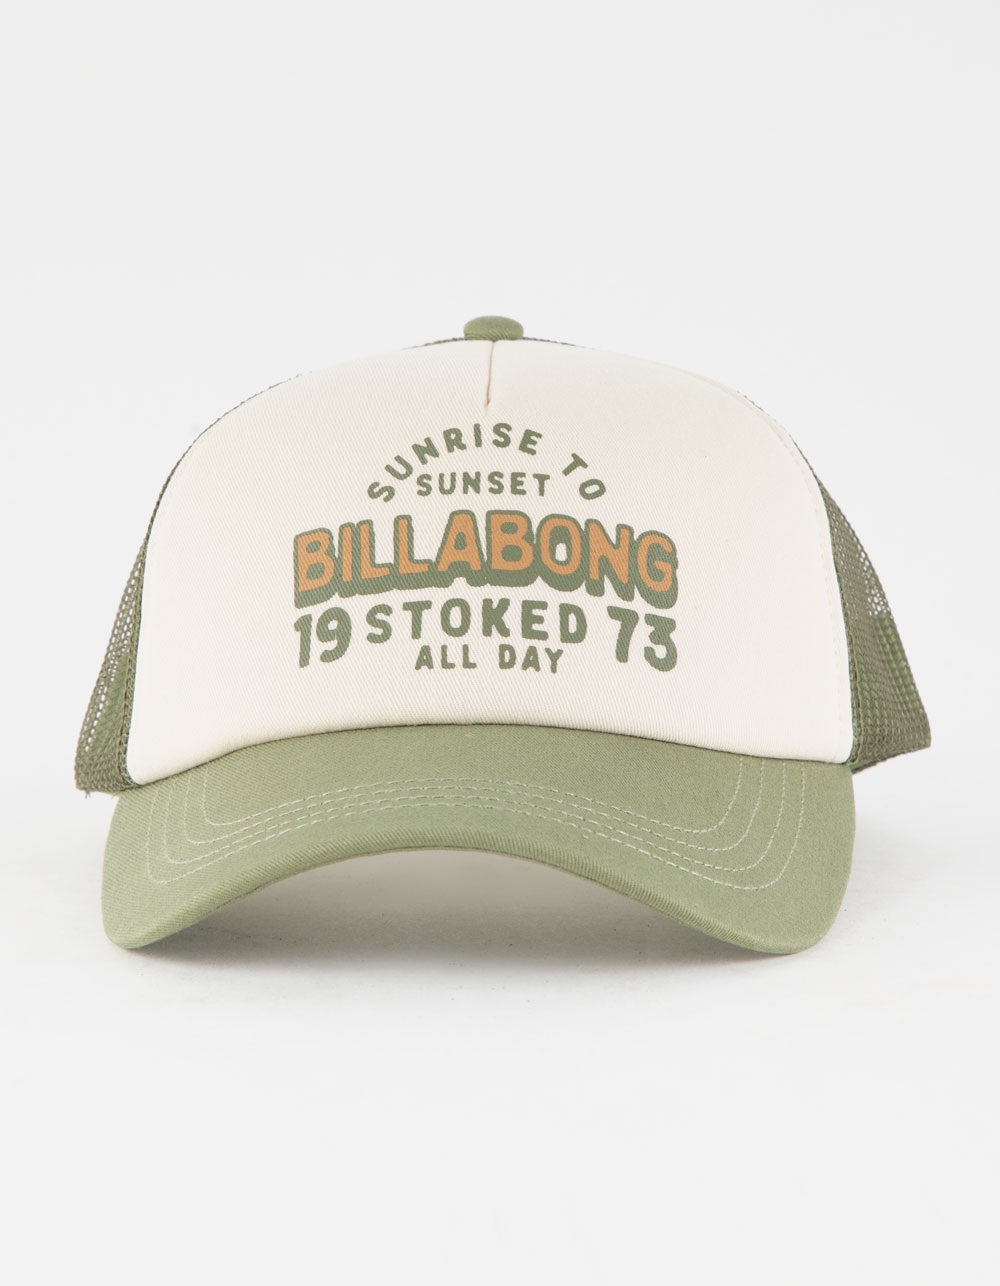 BILLABONG Aloha Forever Womens Hat - Tillys | WHITE/OLIVE Trucker